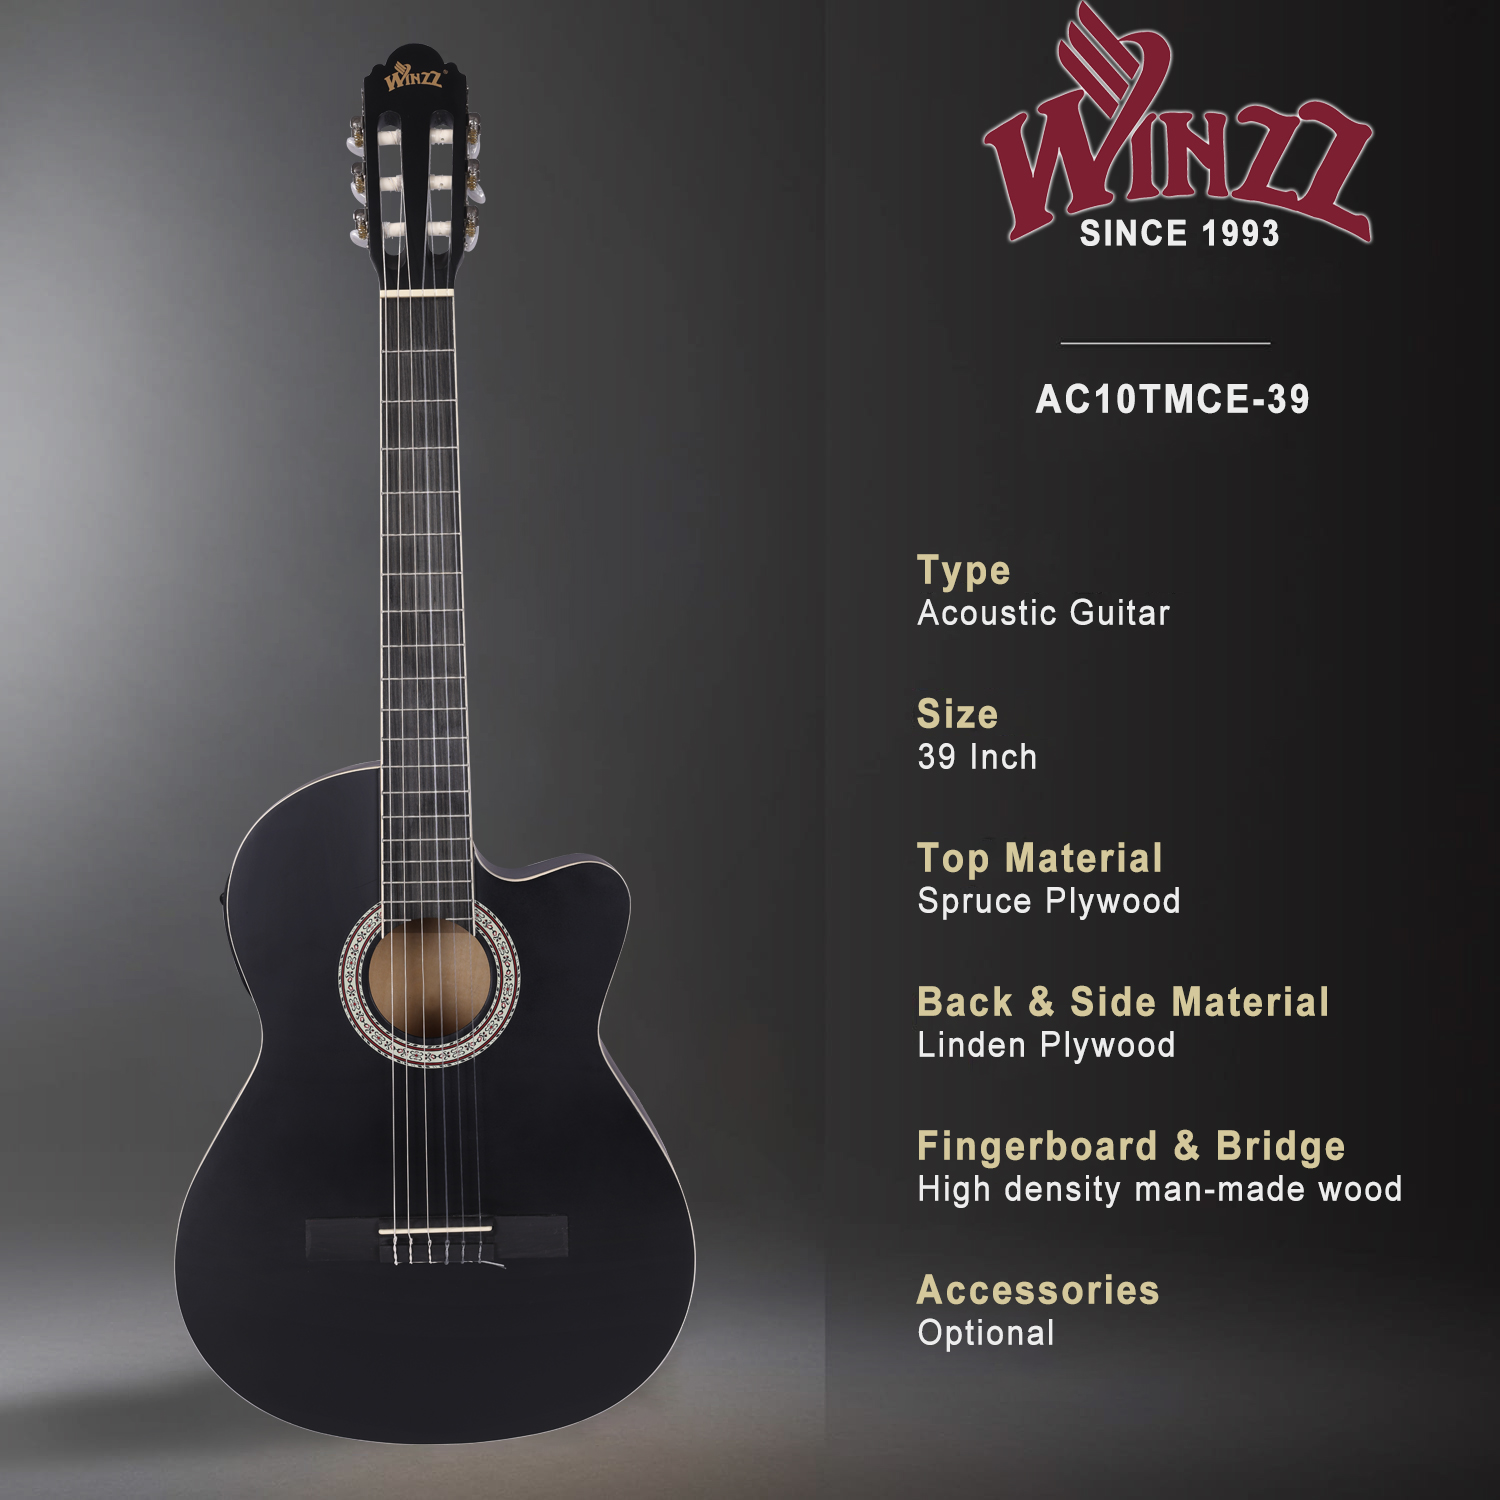 Guitarra eléctrica clásica de cuerpo delgado, instrumentos musicales de 39 pulgadas (AC10TMCE-39)